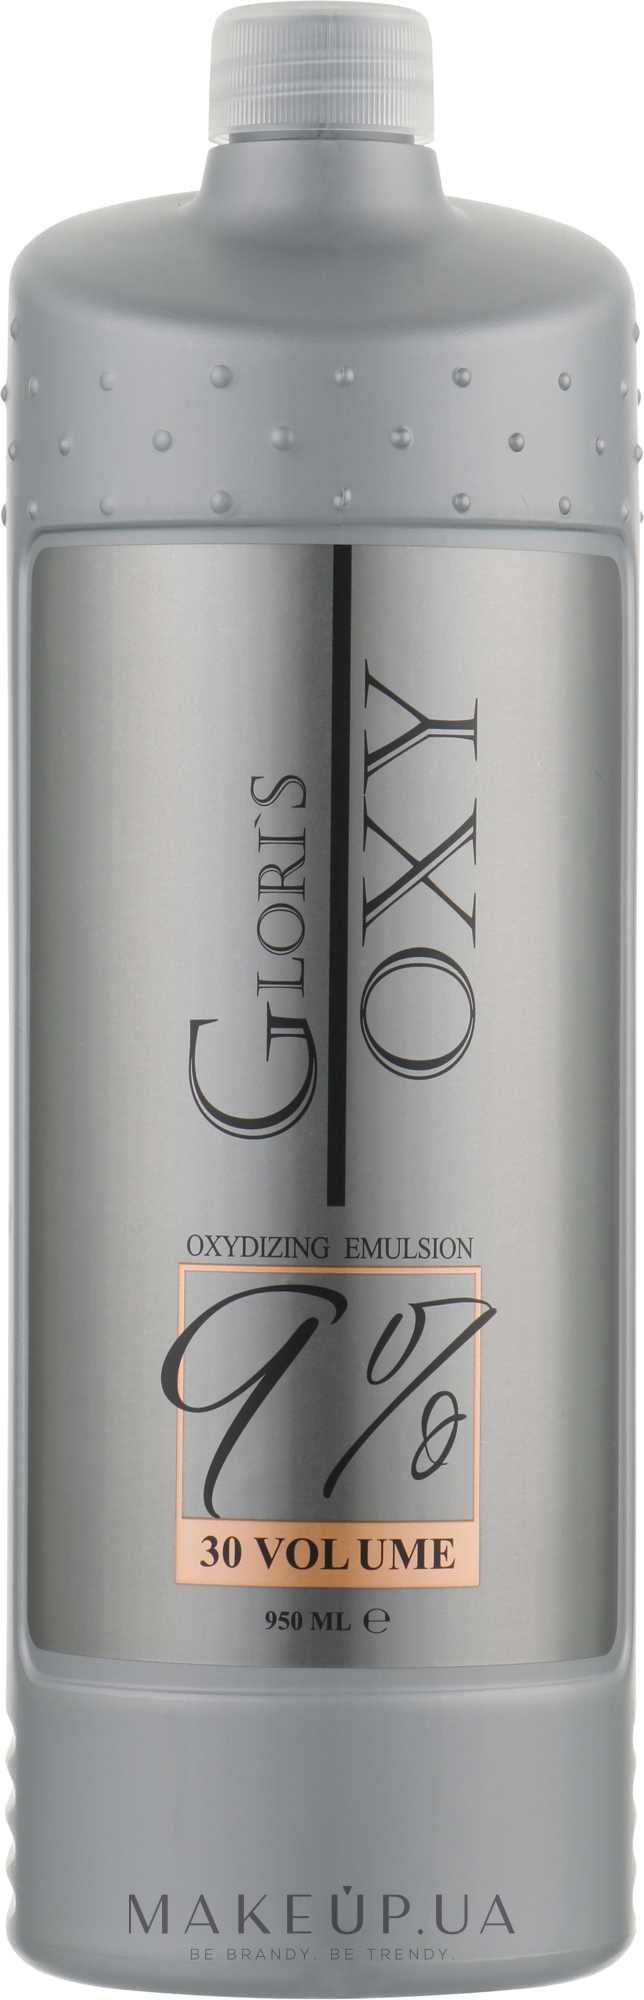 Окислювальна емульсія 9% - Glori's Oxy Oxidizing Emulsion 30 Volume 9 % — фото 950ml